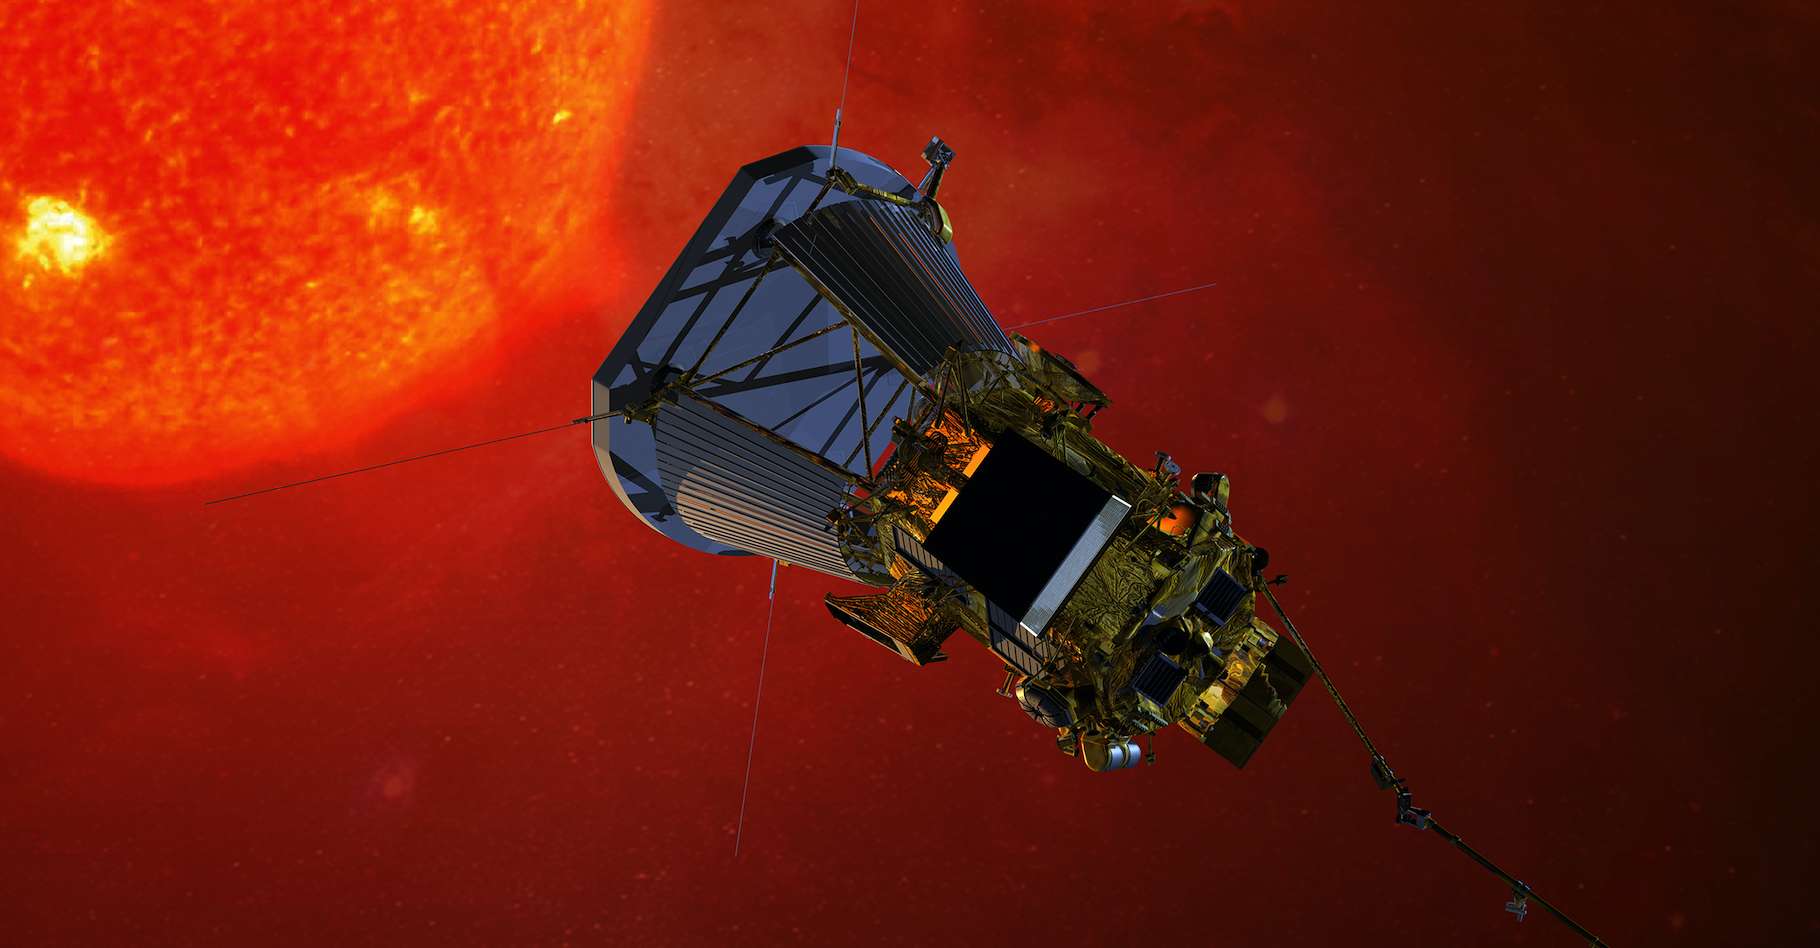 Une vue d’artiste de la sonde solaire Parker (Nasa), lancée en 2018, et dont l’objectif est, entre autres, d’étudier le vent solaire à seulement 0,3 unité astronomique de notre Soleil. © Nasa, Johns Hopkins University Applied Physics Laboratory